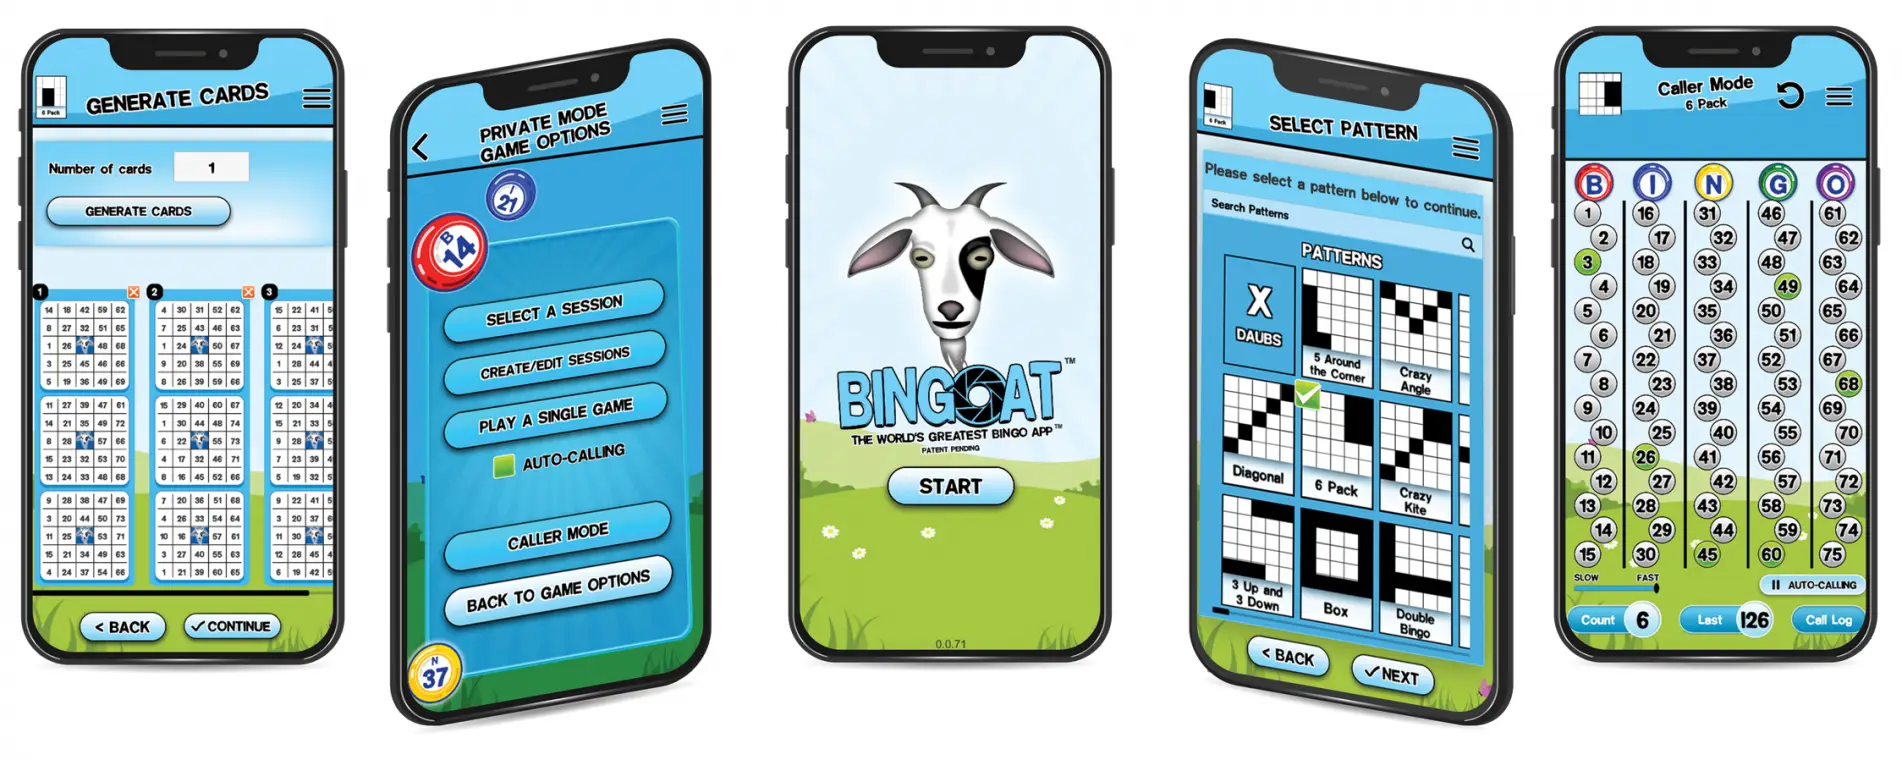 BinGoat Mobile App